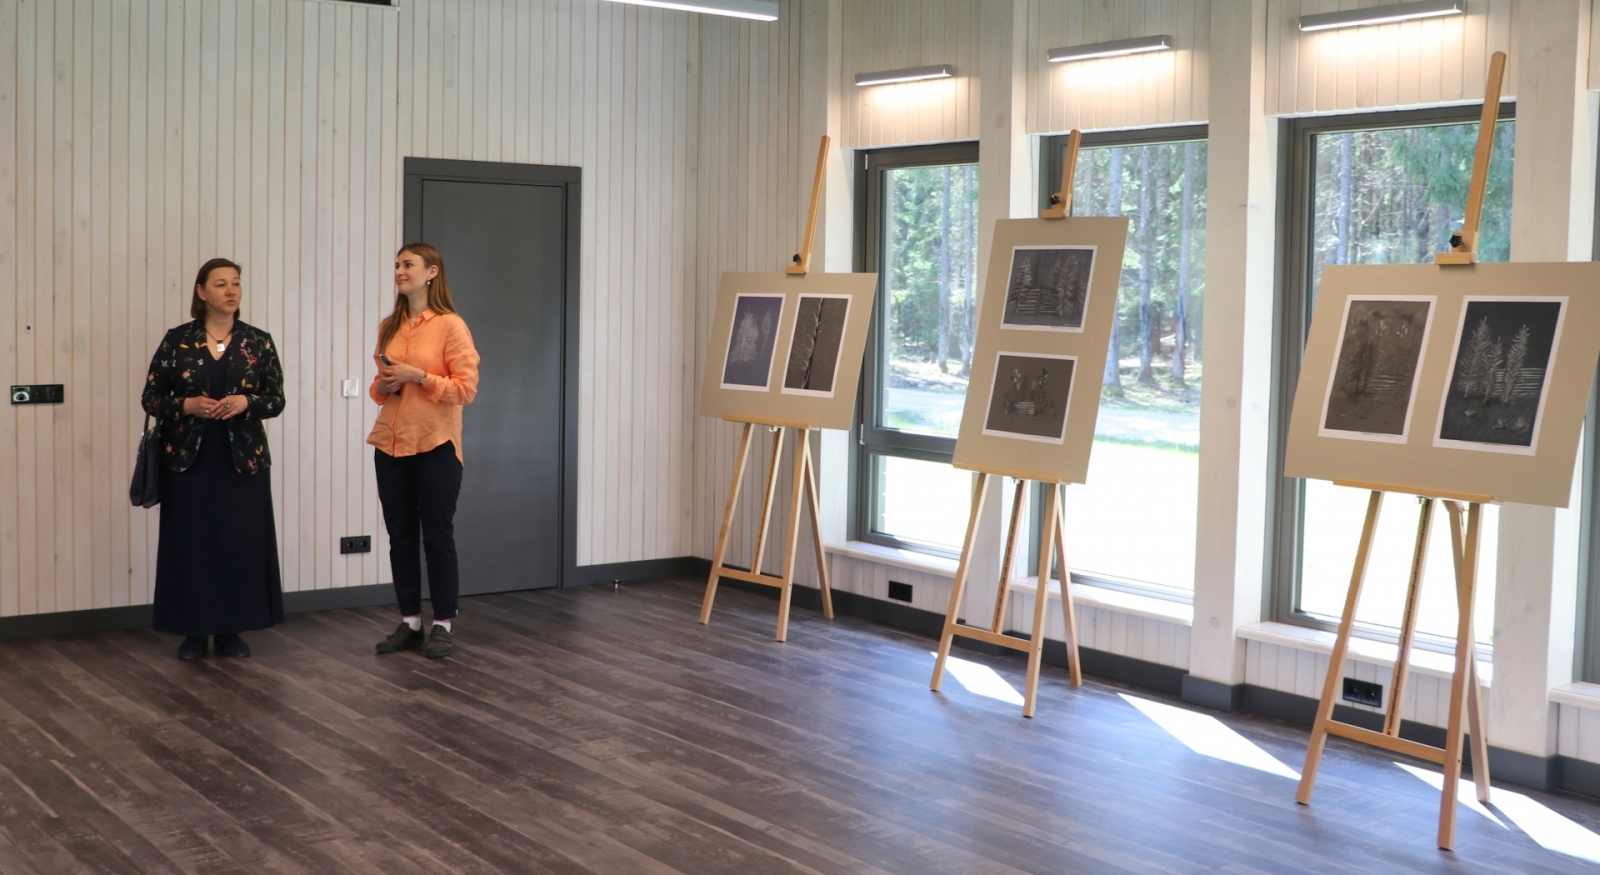 Vides izglītības centrs “EkVidO2” atklāšana, mākslas darbu izstāde 11.05.2023.